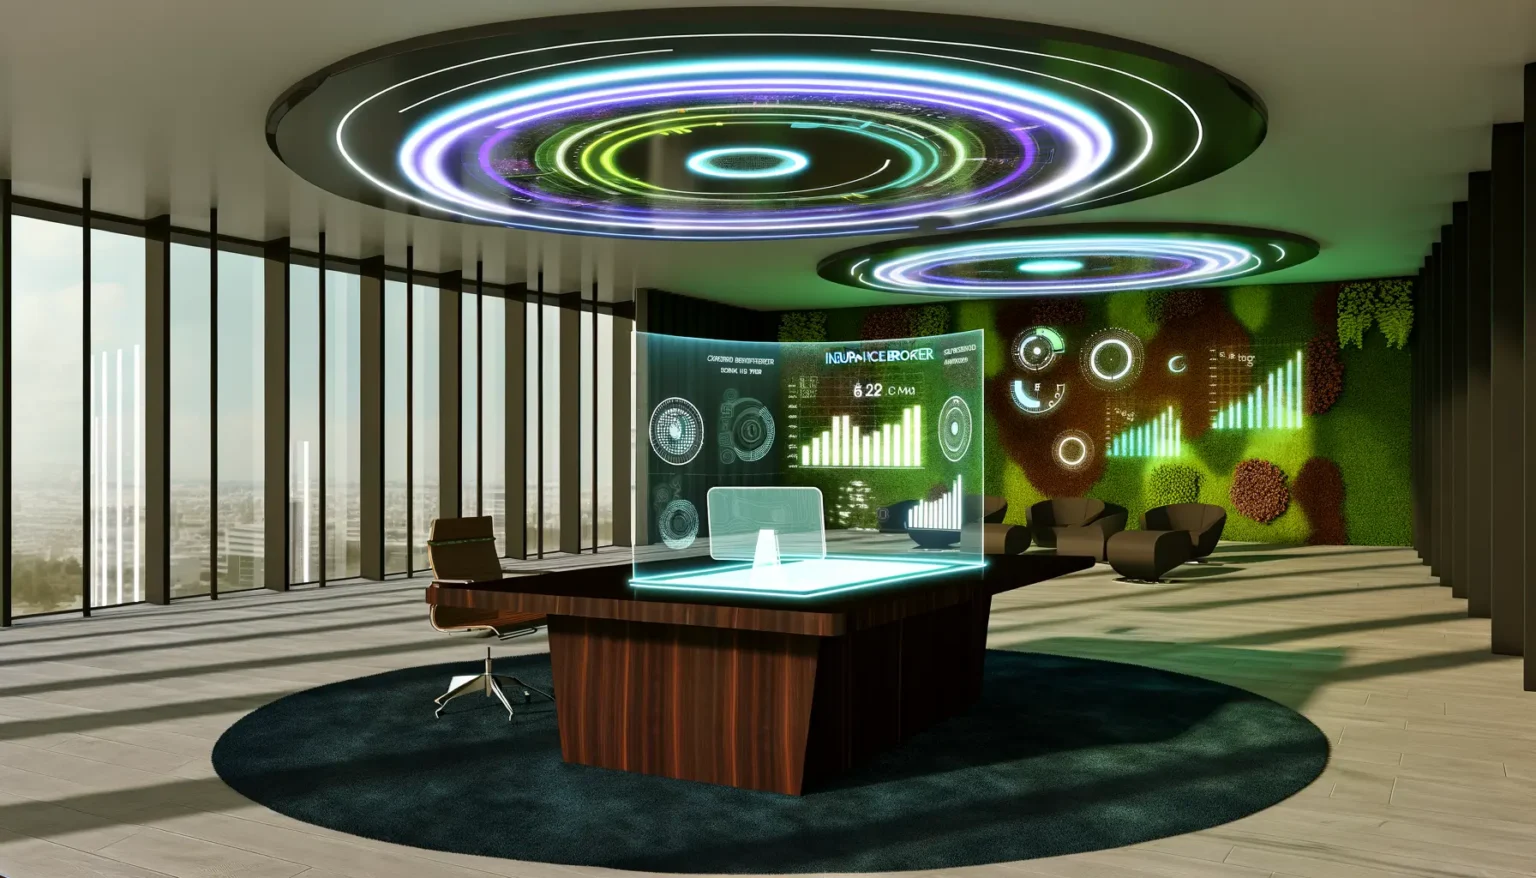 Moderne Büroeinrichtung mit futuristischem Design, einschließlich eines Schreibtisches mit holographischen Displays, umgeben von hohen Fenstern mit Blick auf eine Stadtlandschaft. Über dem Raum schwebt eine große, leuchtende Deckeninstallation, die an eine Galaxie erinnert. An der Wand befindet sich eine grüne, pflanzenbedeckte Darstellungsfläche mit interaktiven Schaubildern. Im Hintergrund sind stilvolle Sitzgelegenheiten und stufenförmige Holzelemente zu sehen.